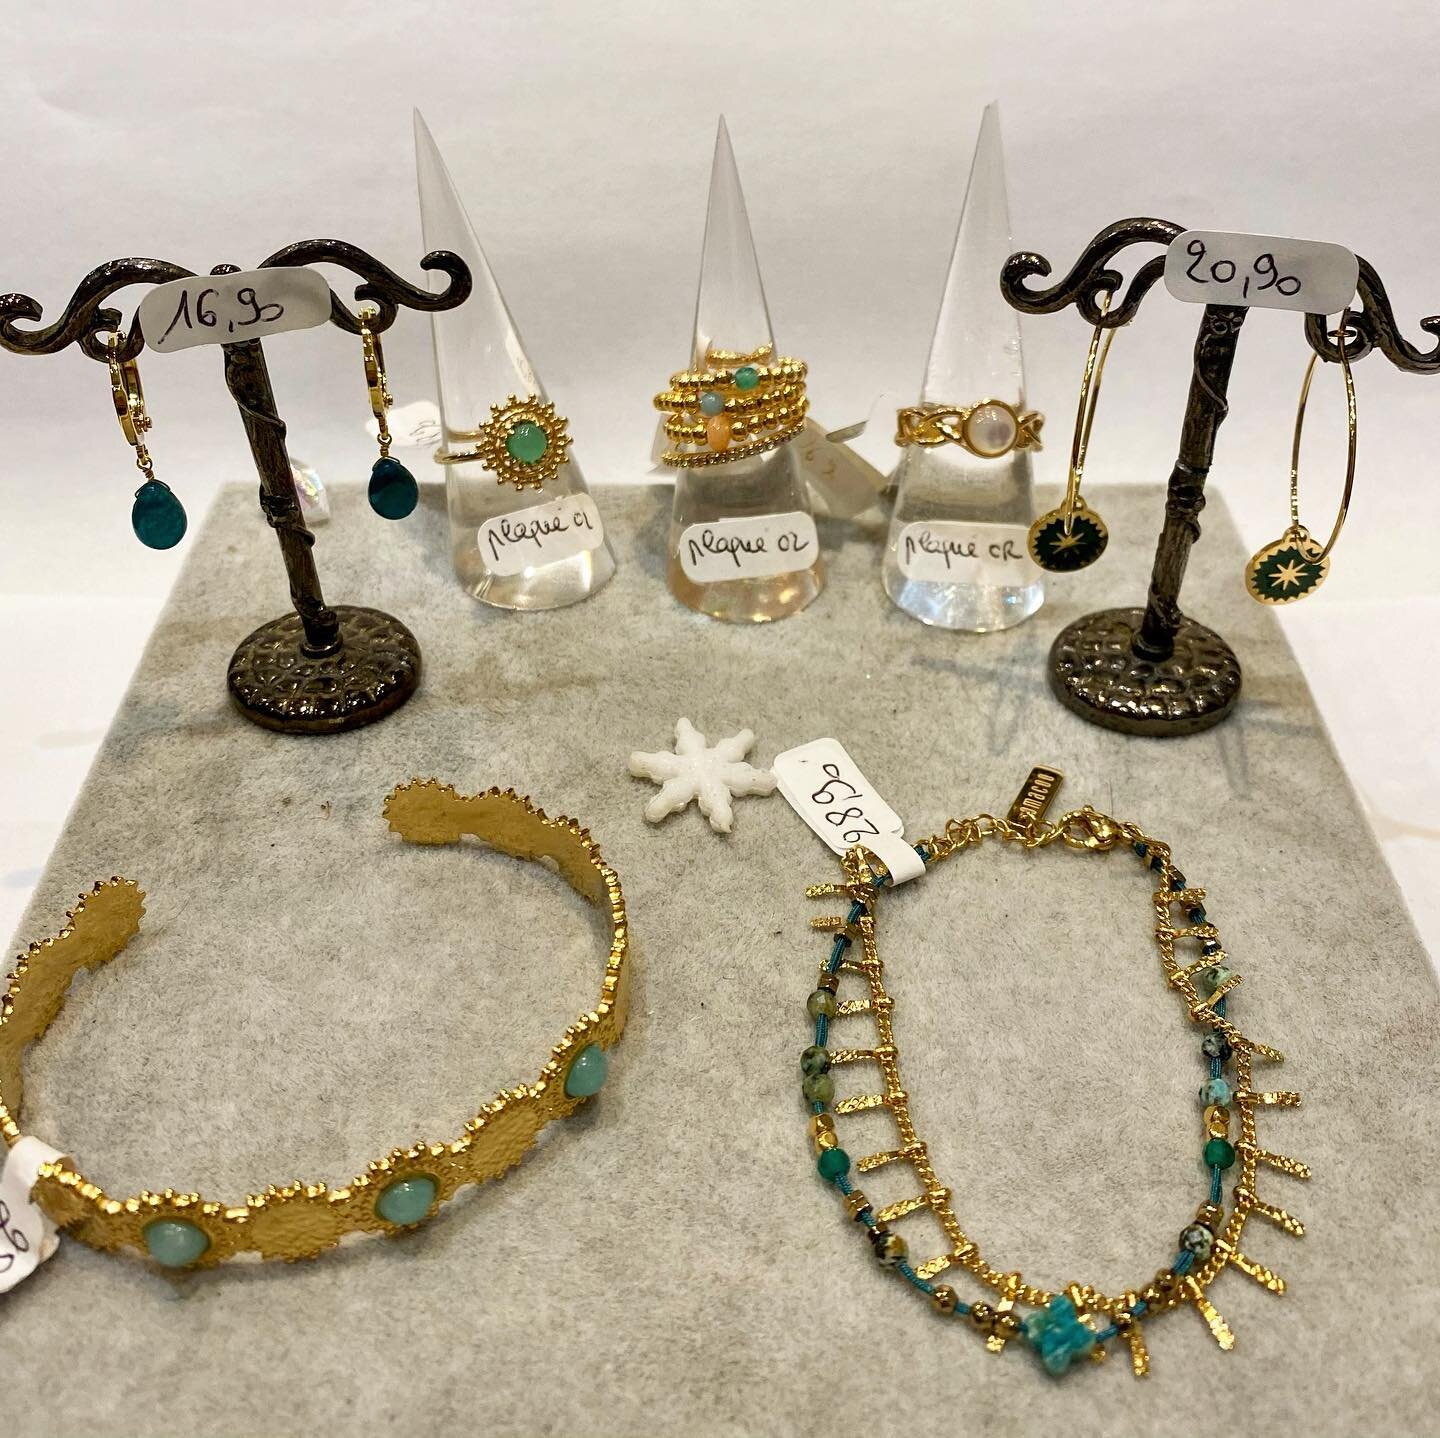 Du vert pour Noël 🌿 

Bijoux en acier et plaqué or ✨

#noel #santa #jewelry #bijoux #gift #giftideas #ideecadeau #green #gold #acierinoxydable #plaqueor #rouen #bleulilas